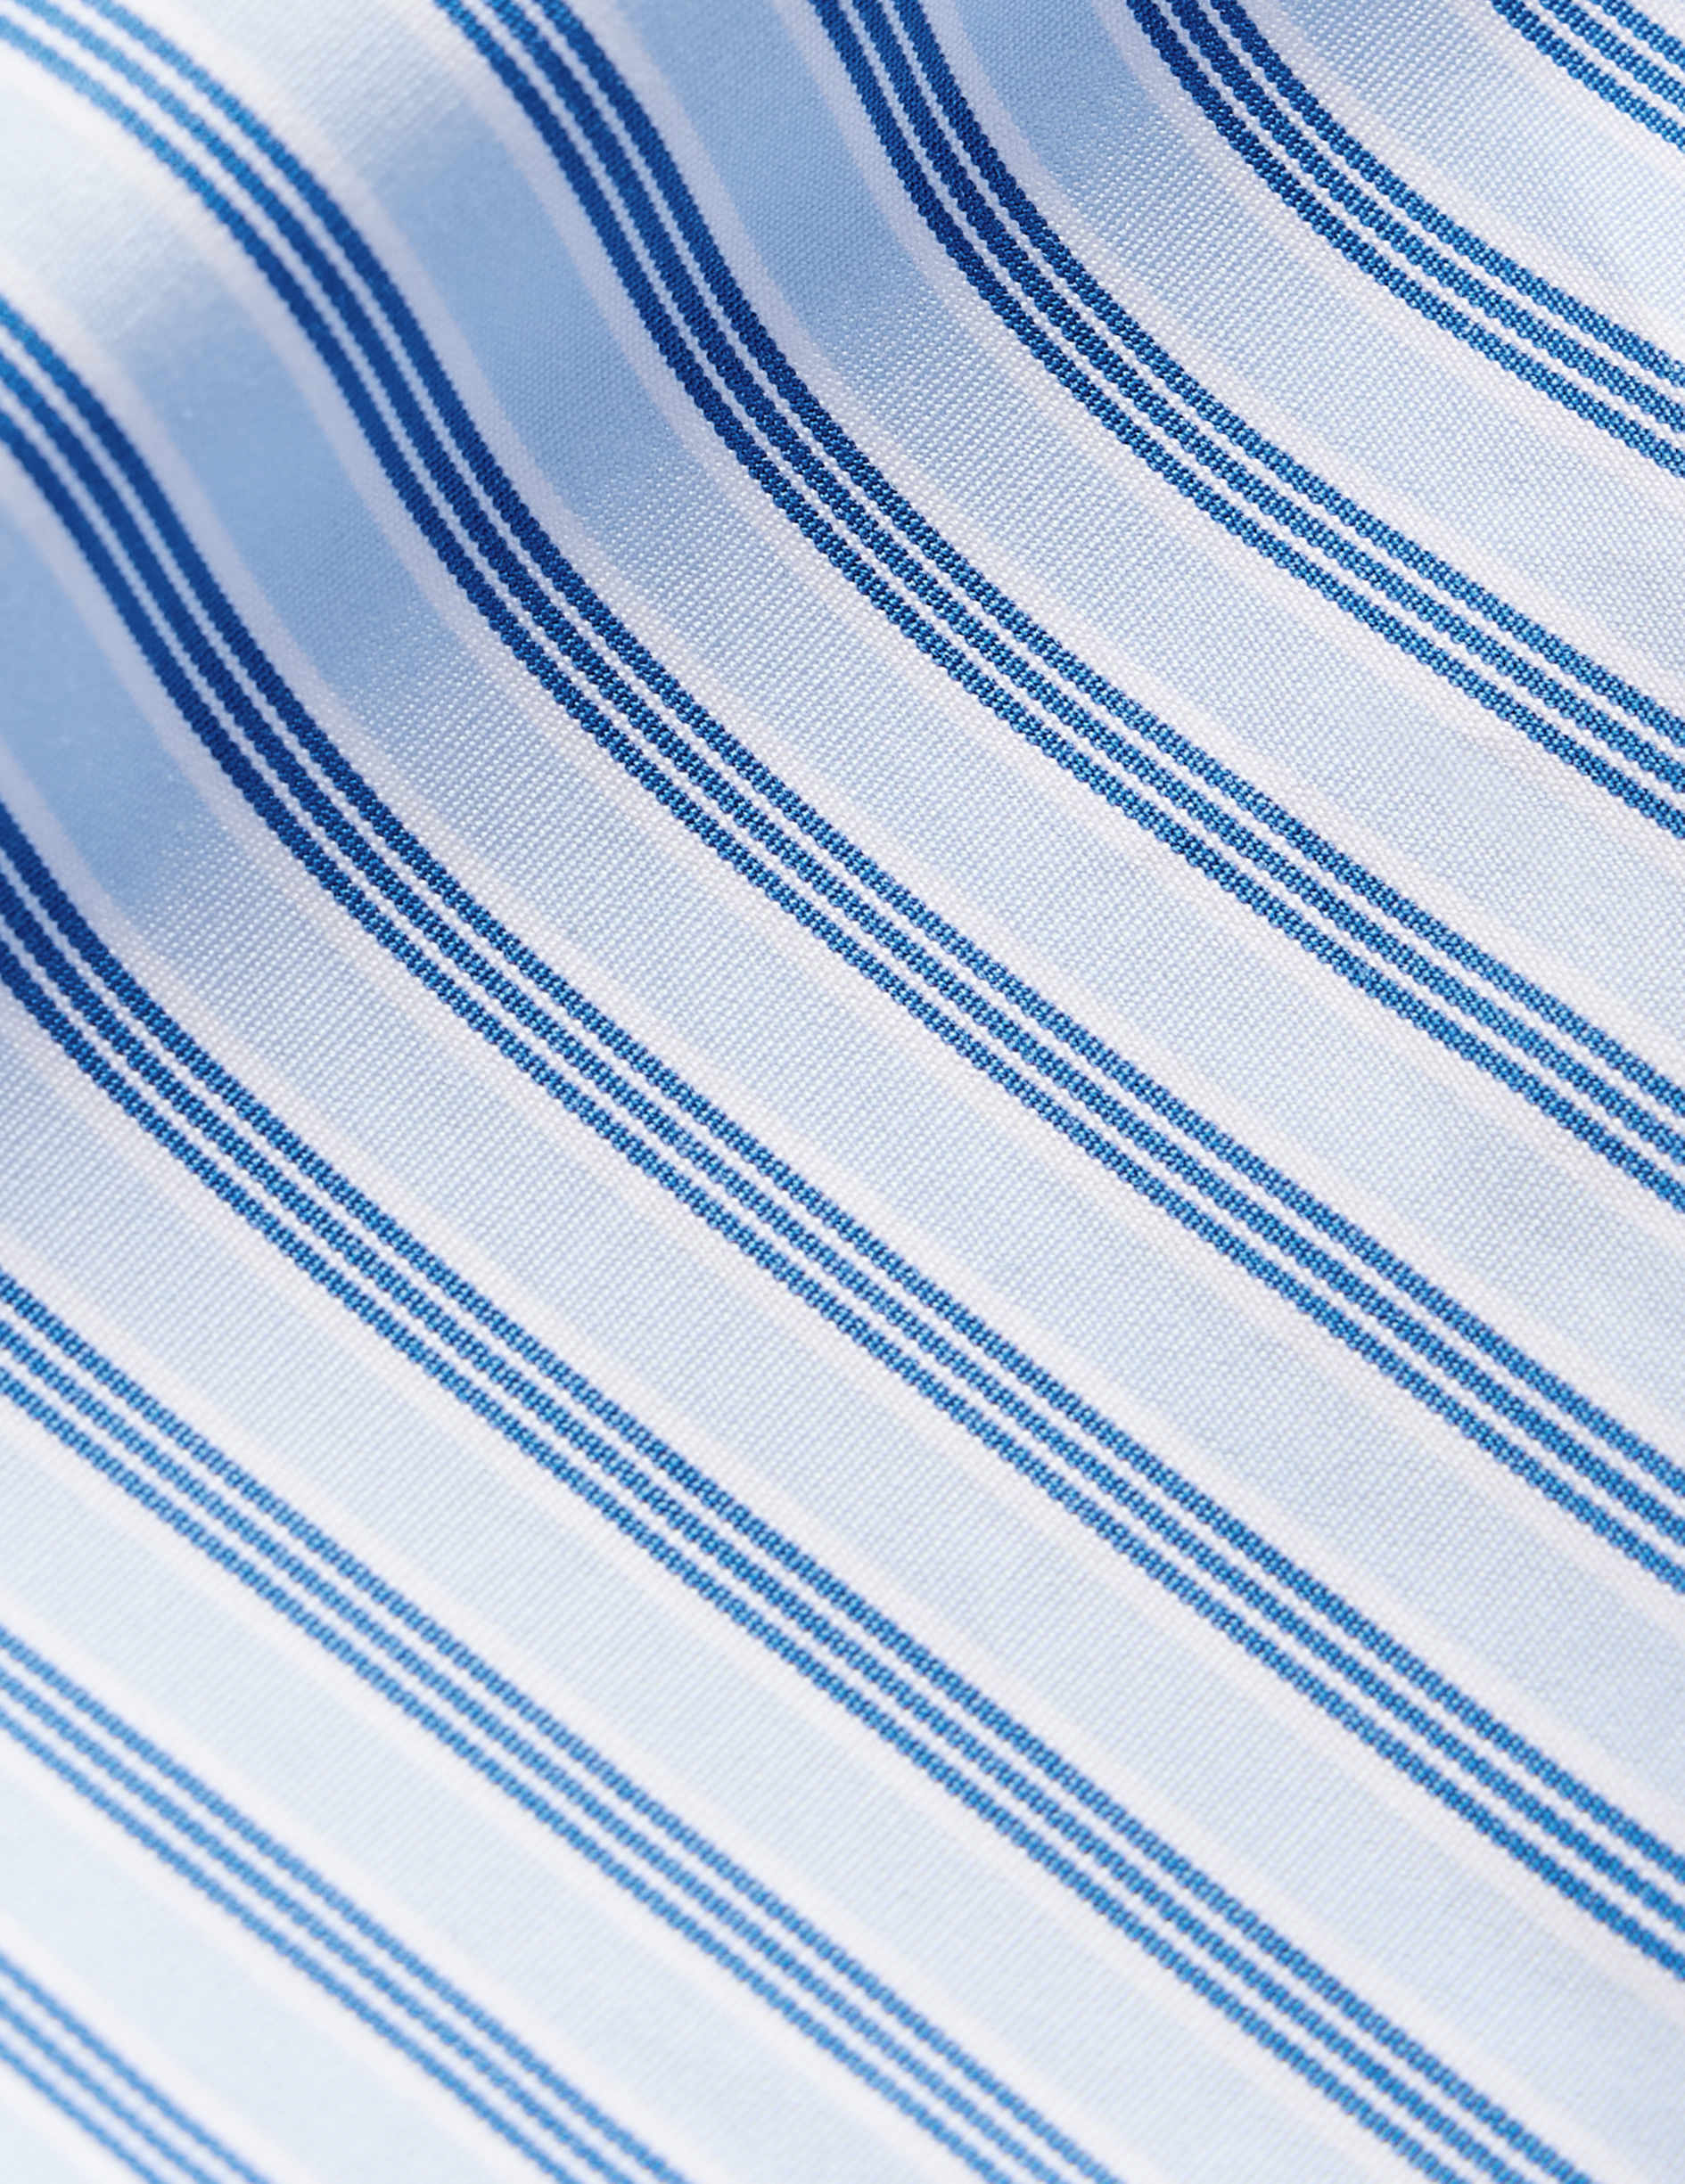 Chemise semi-ajustée rayée bleue - Popeline - Col Italien